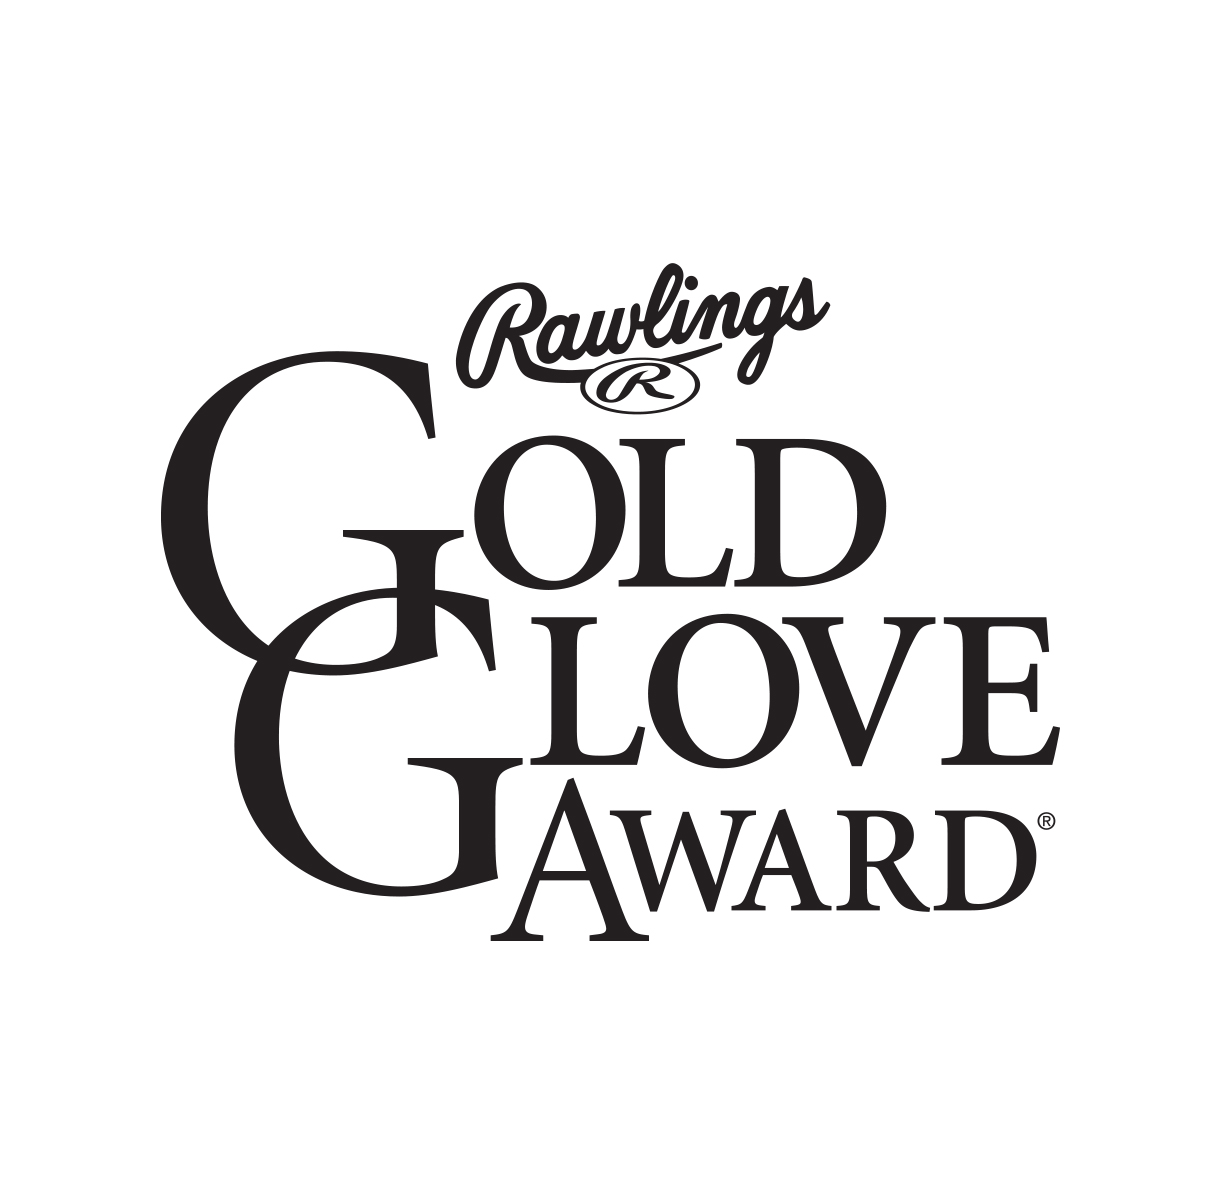 Gold Glove Black white logo